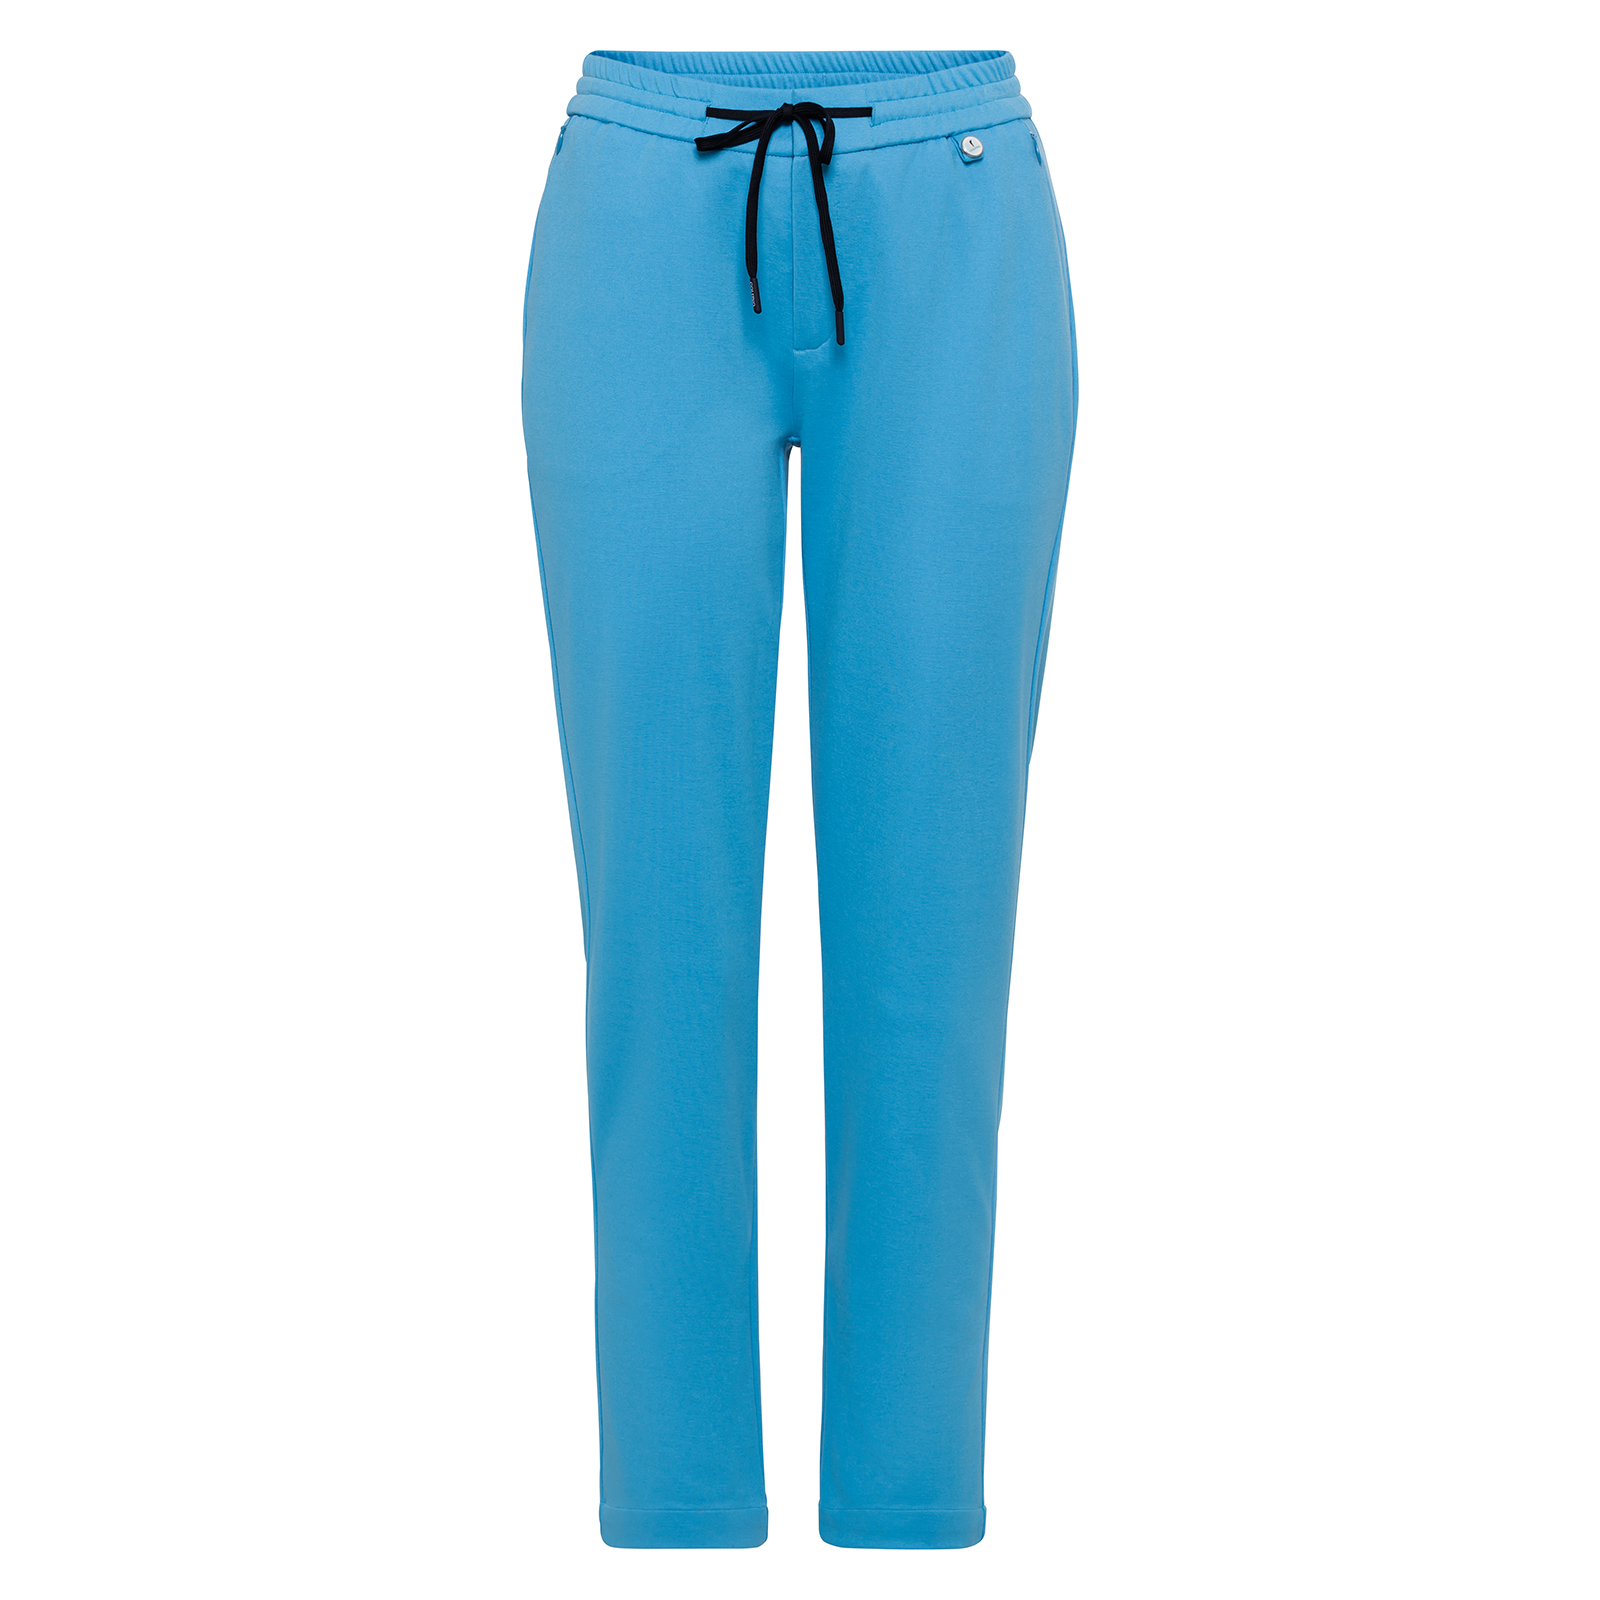 Pantalones 7/8 especialmente elásticos y con un atractivo diseño para mujer